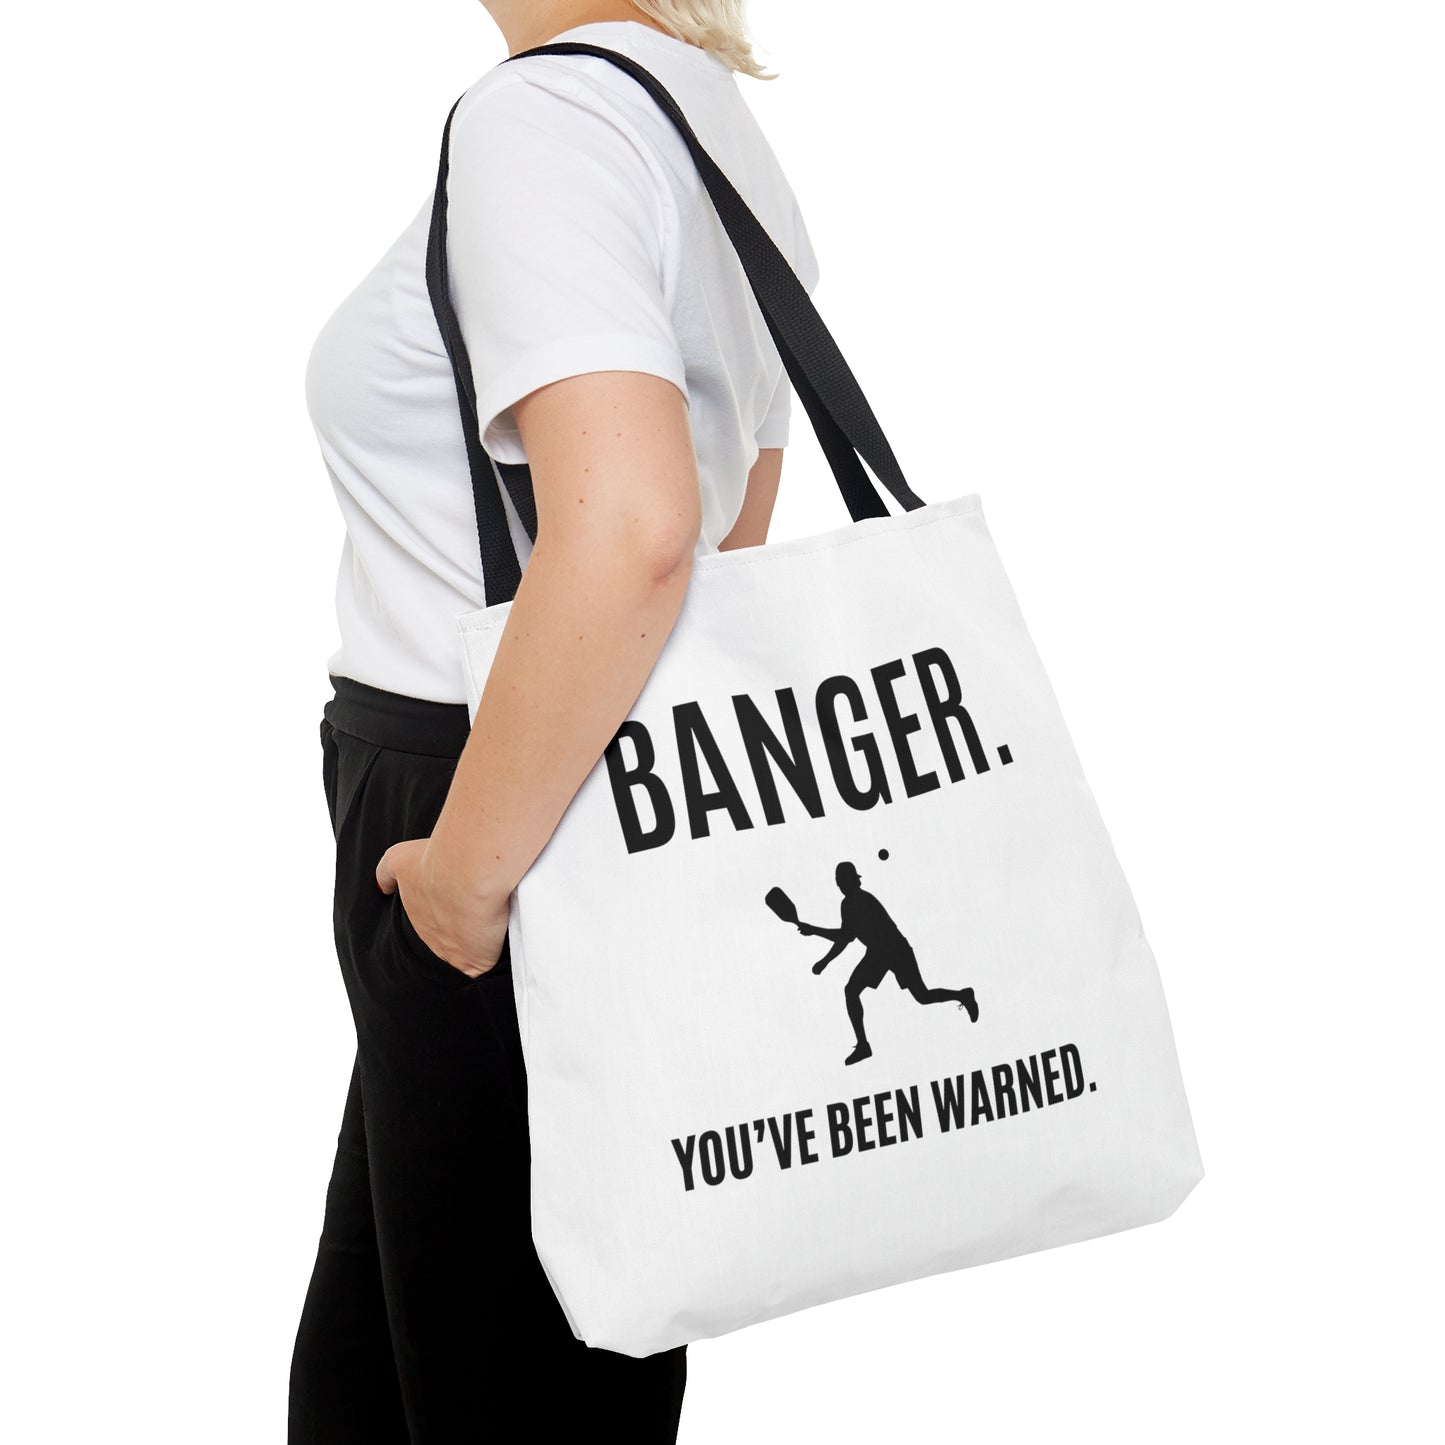 Banger. You've Been Warned. Tote Bag